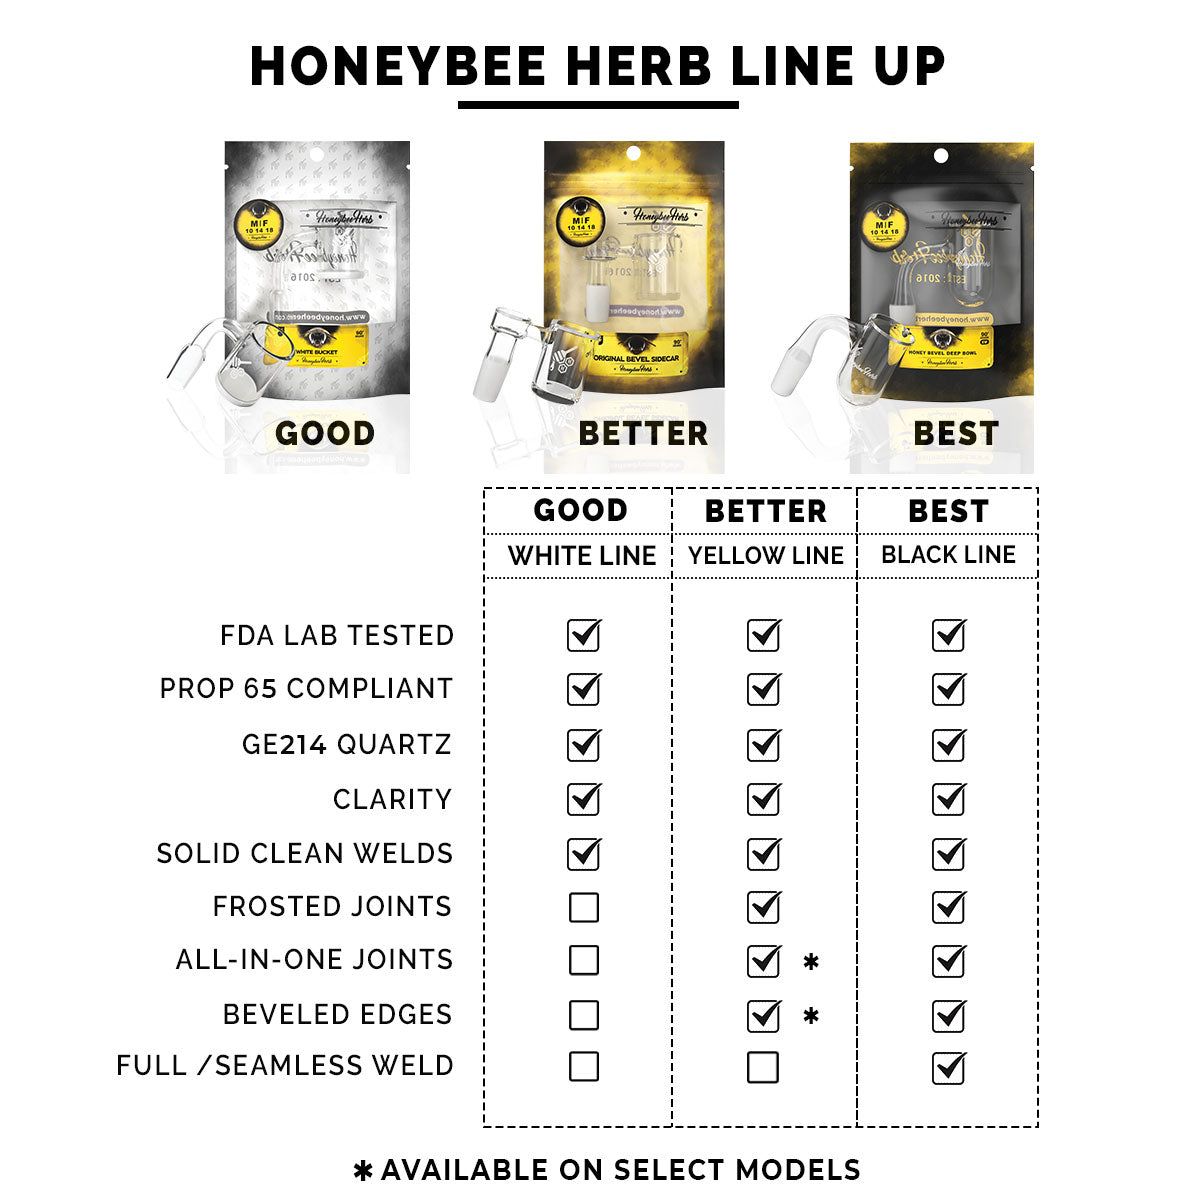 Honeybee Herb Line Up